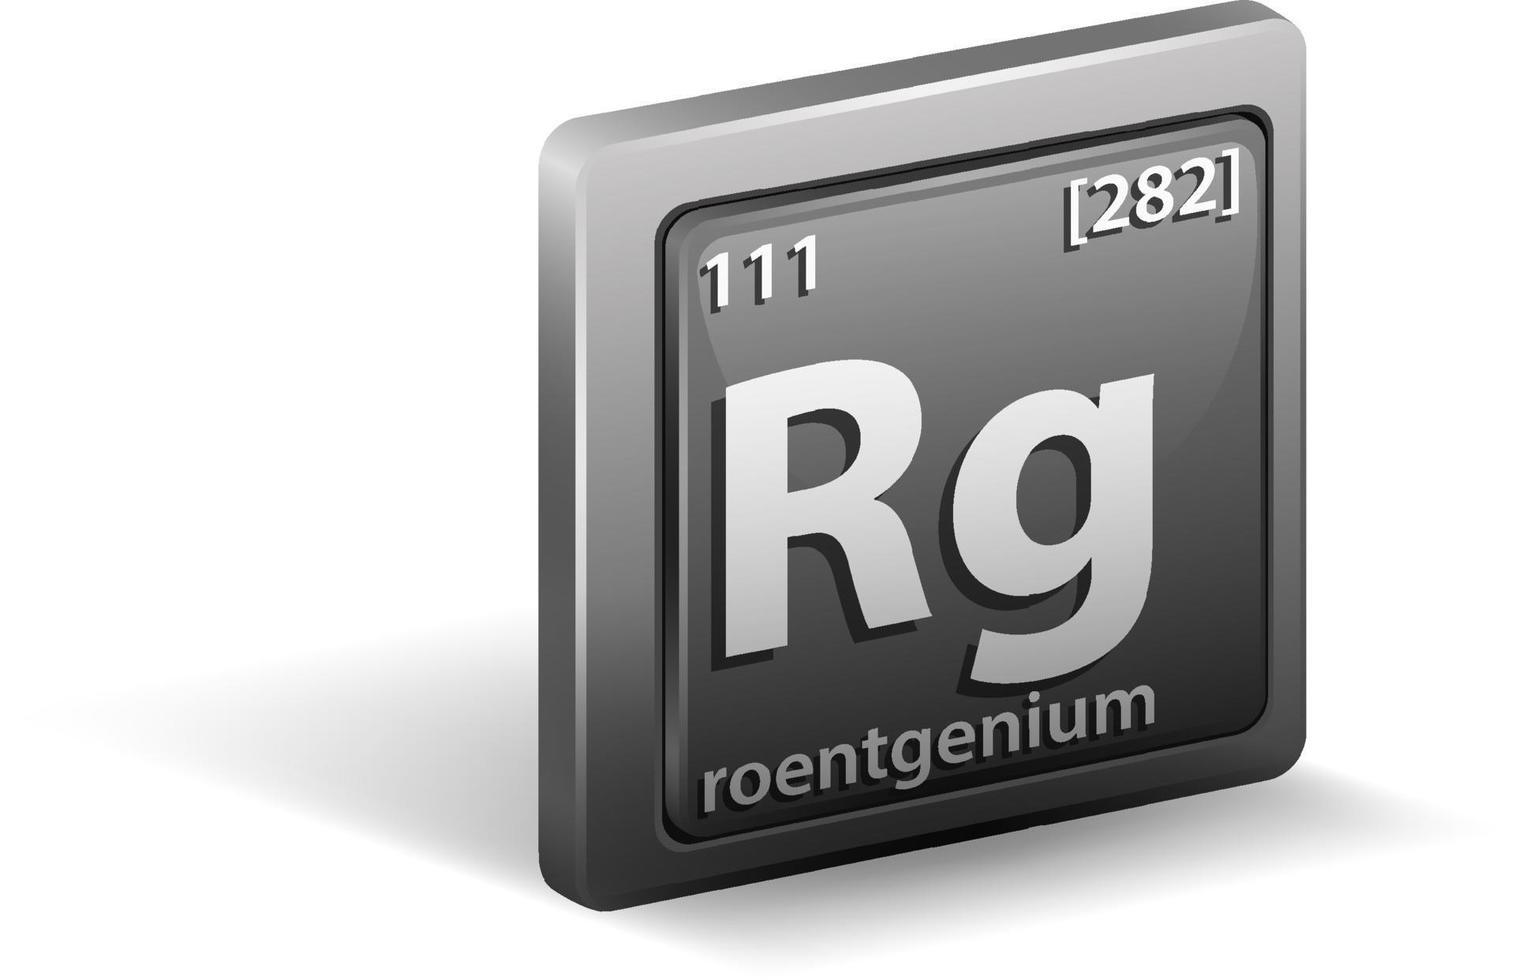 elemento químico roentgênio. símbolo químico com número atômico e massa atômica. vetor